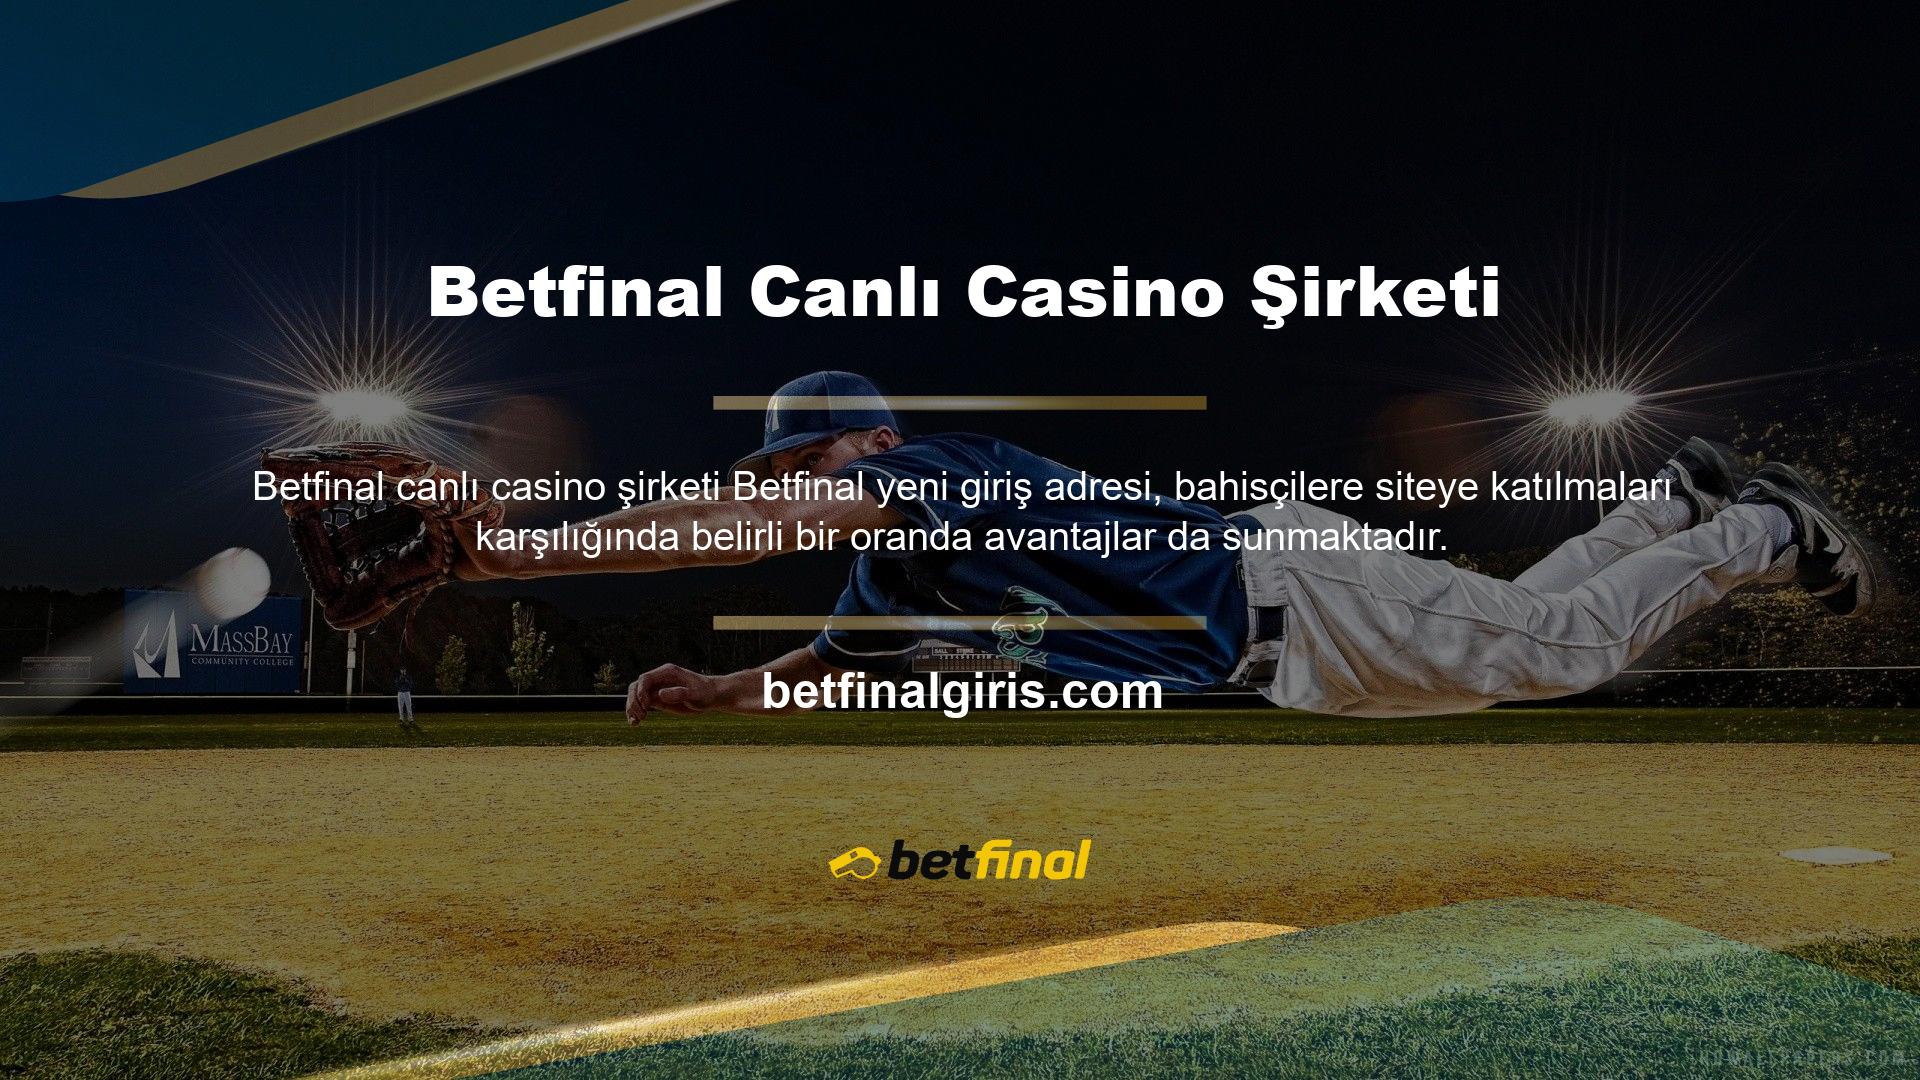 Betfinal, casino sitesinin ödeme yapıp yapmadığı, hangi lisansa sahip olduğu ve hangi hizmetleri sağladığı konusunda gerekli cevapları verir